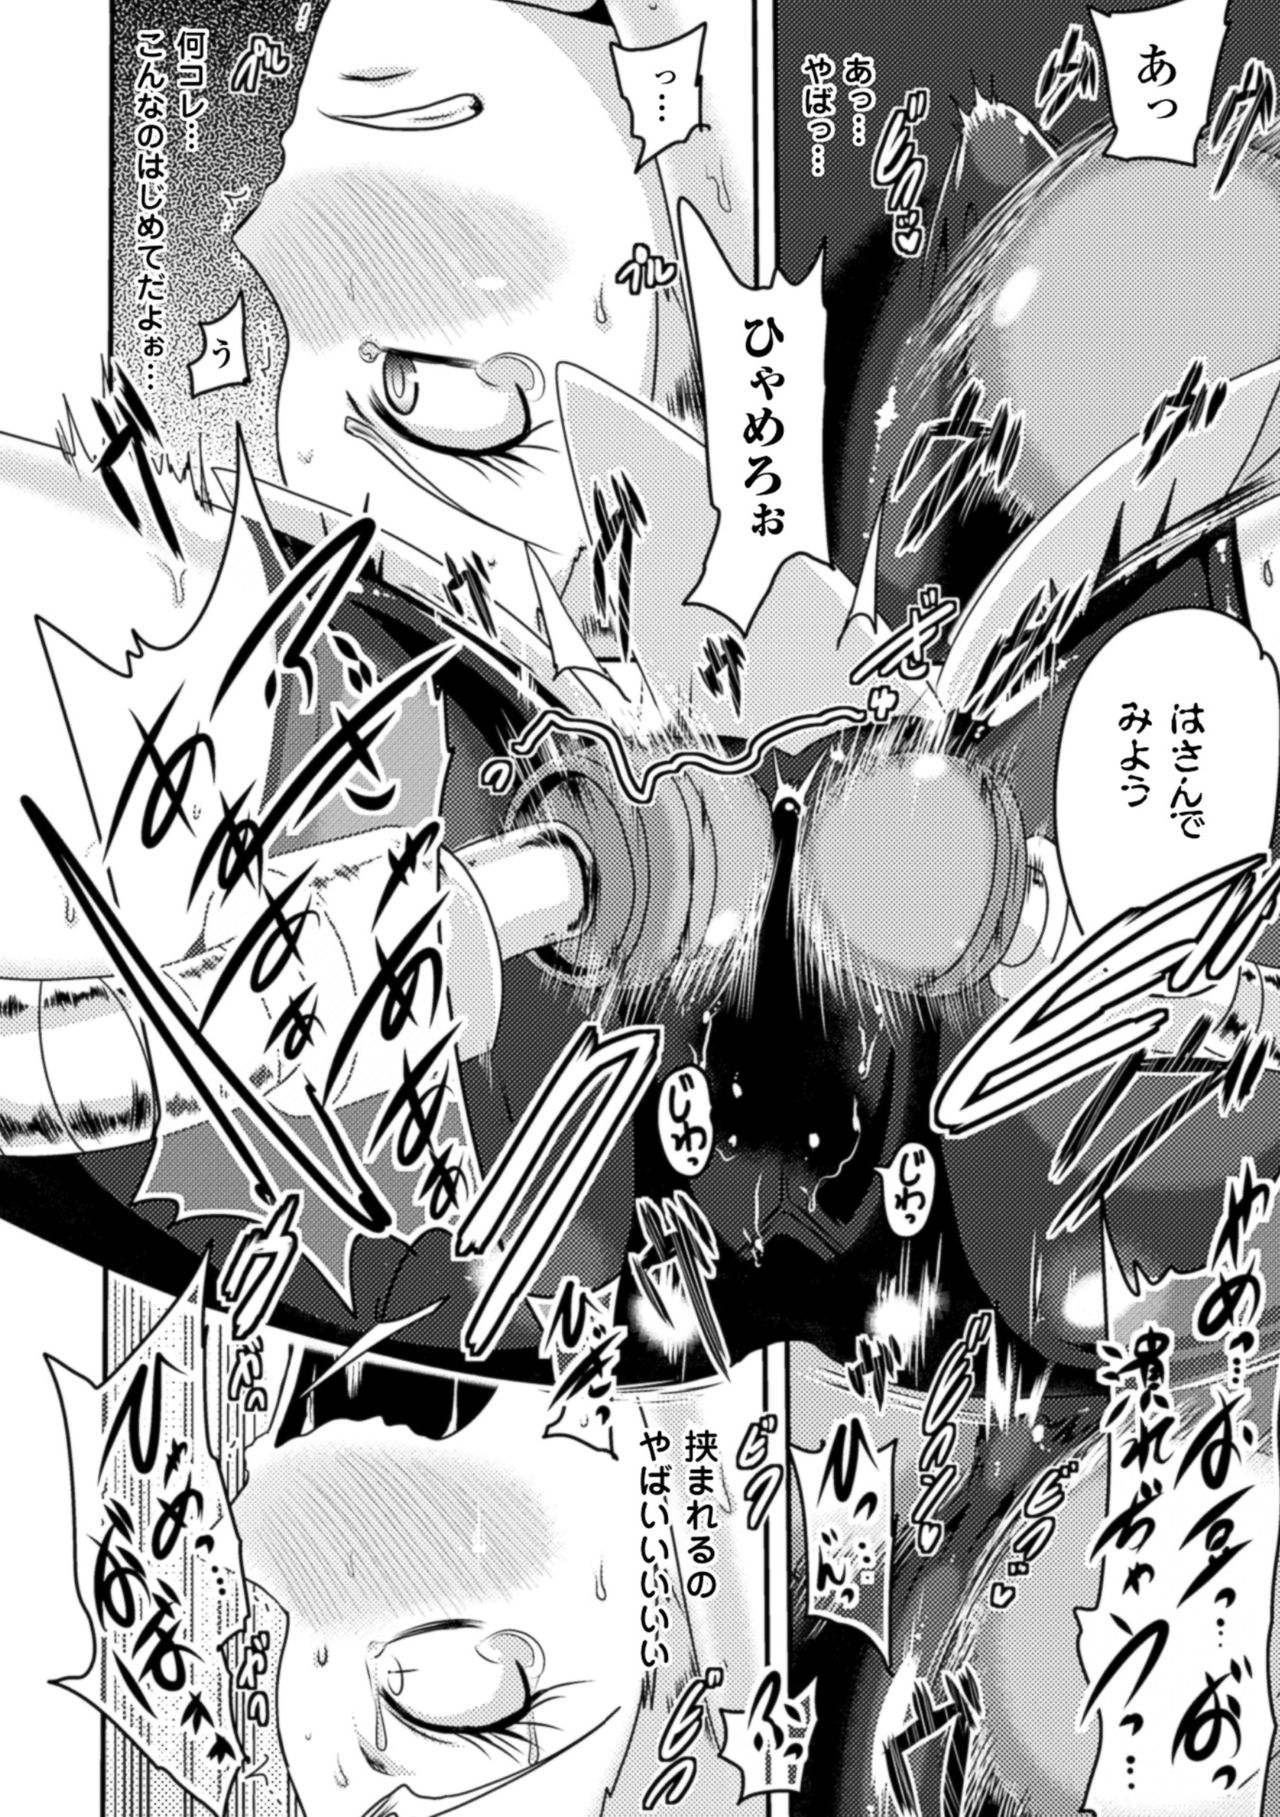 [Akuochisukii Sensei] Akuochisukii Sensei no Heroine Haiboku no Houteishiki - Equation of Heroine's defeat by Mr. Akuochisukii [Digital] 11